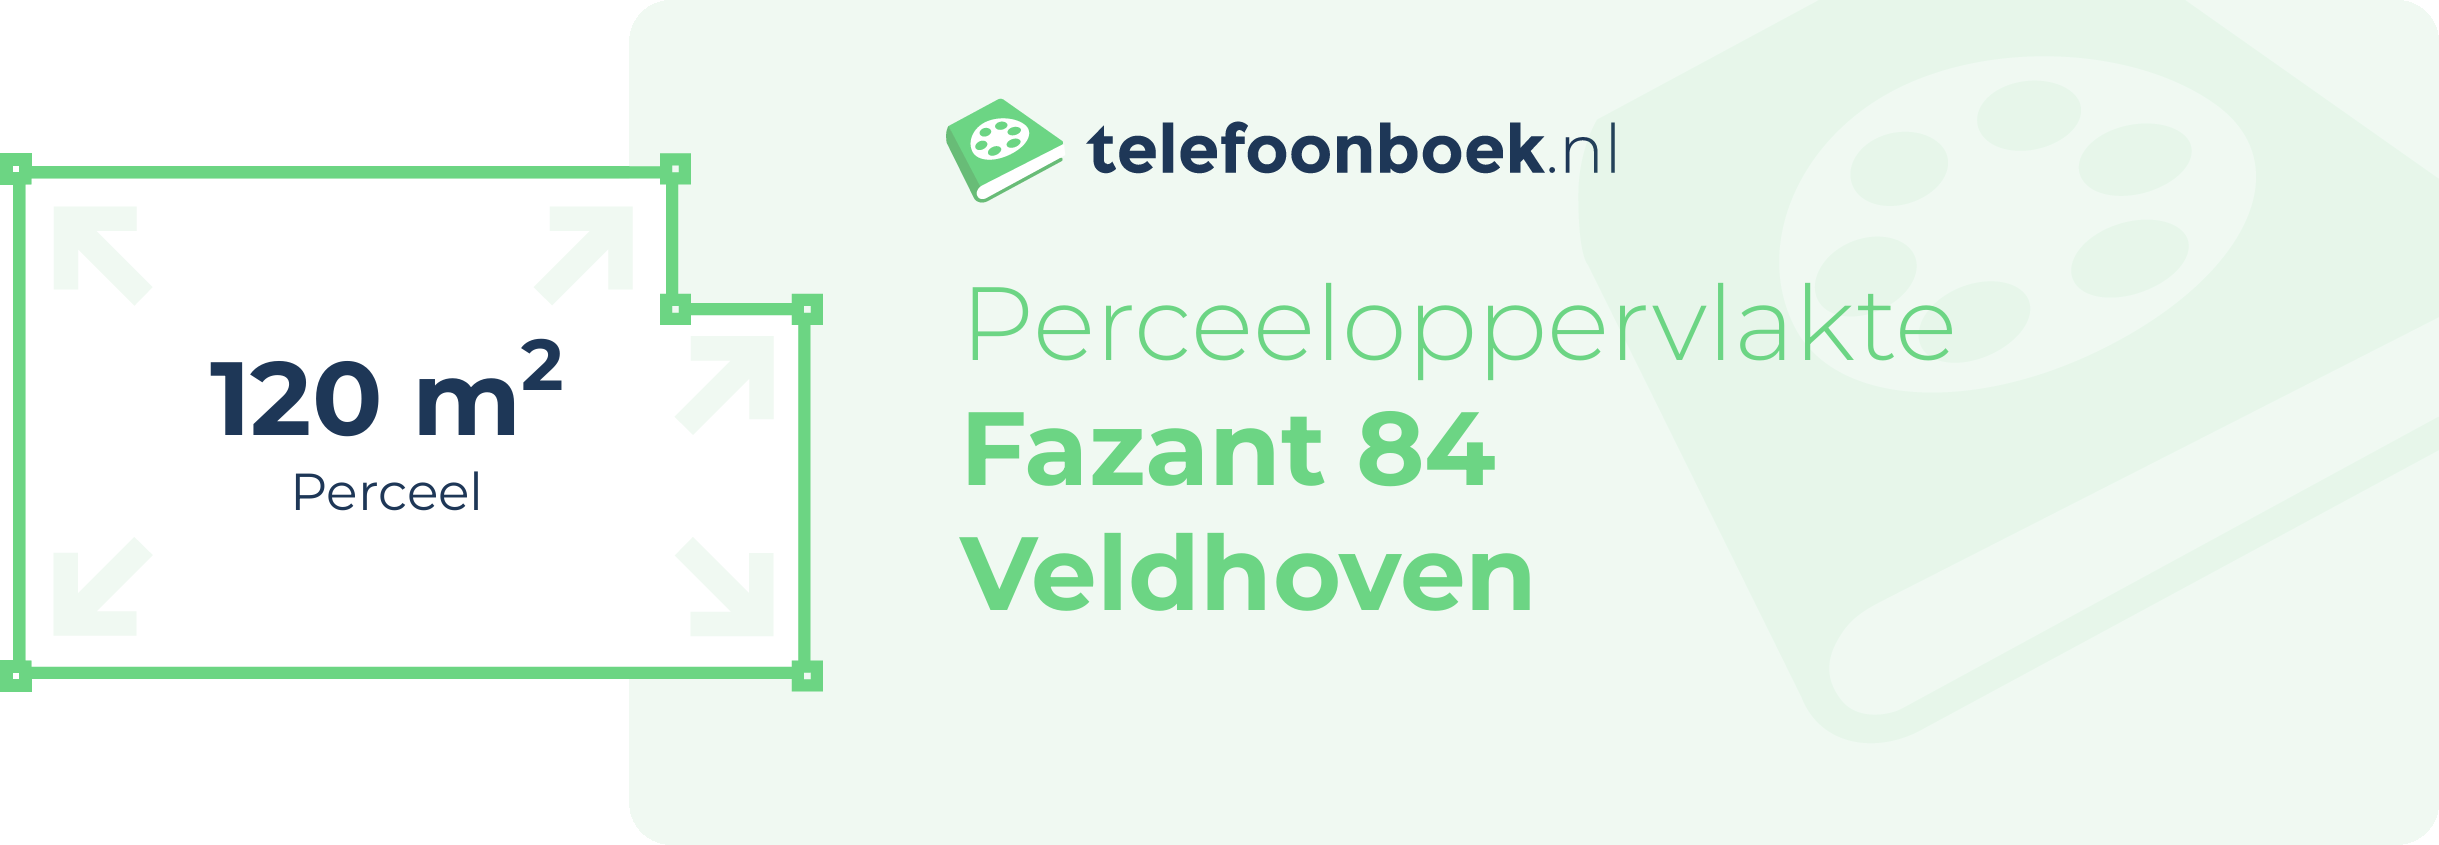 Perceeloppervlakte Fazant 84 Veldhoven